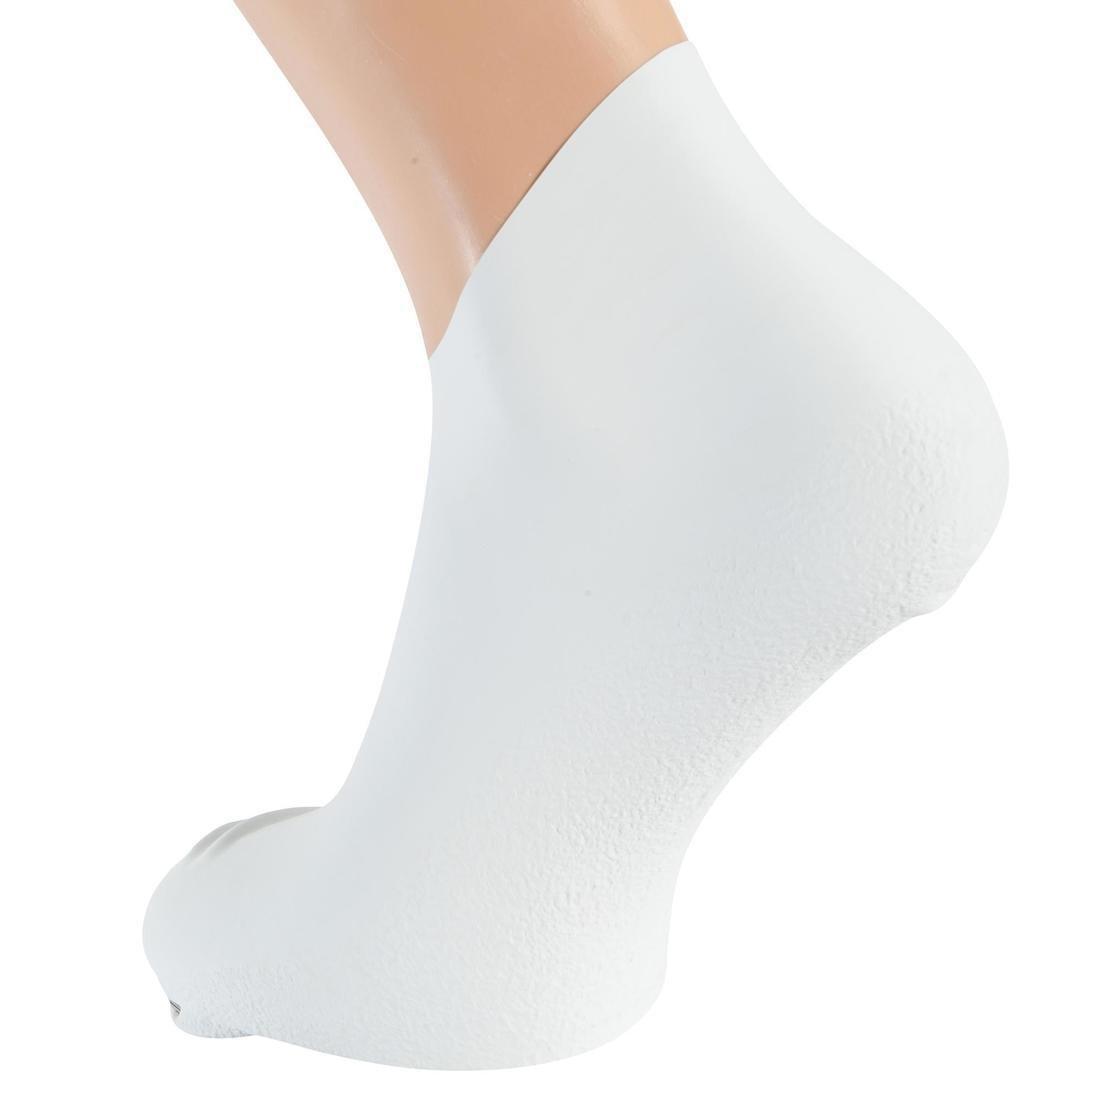 NABAIJI - Unisex Silatex Swimming Socks, White